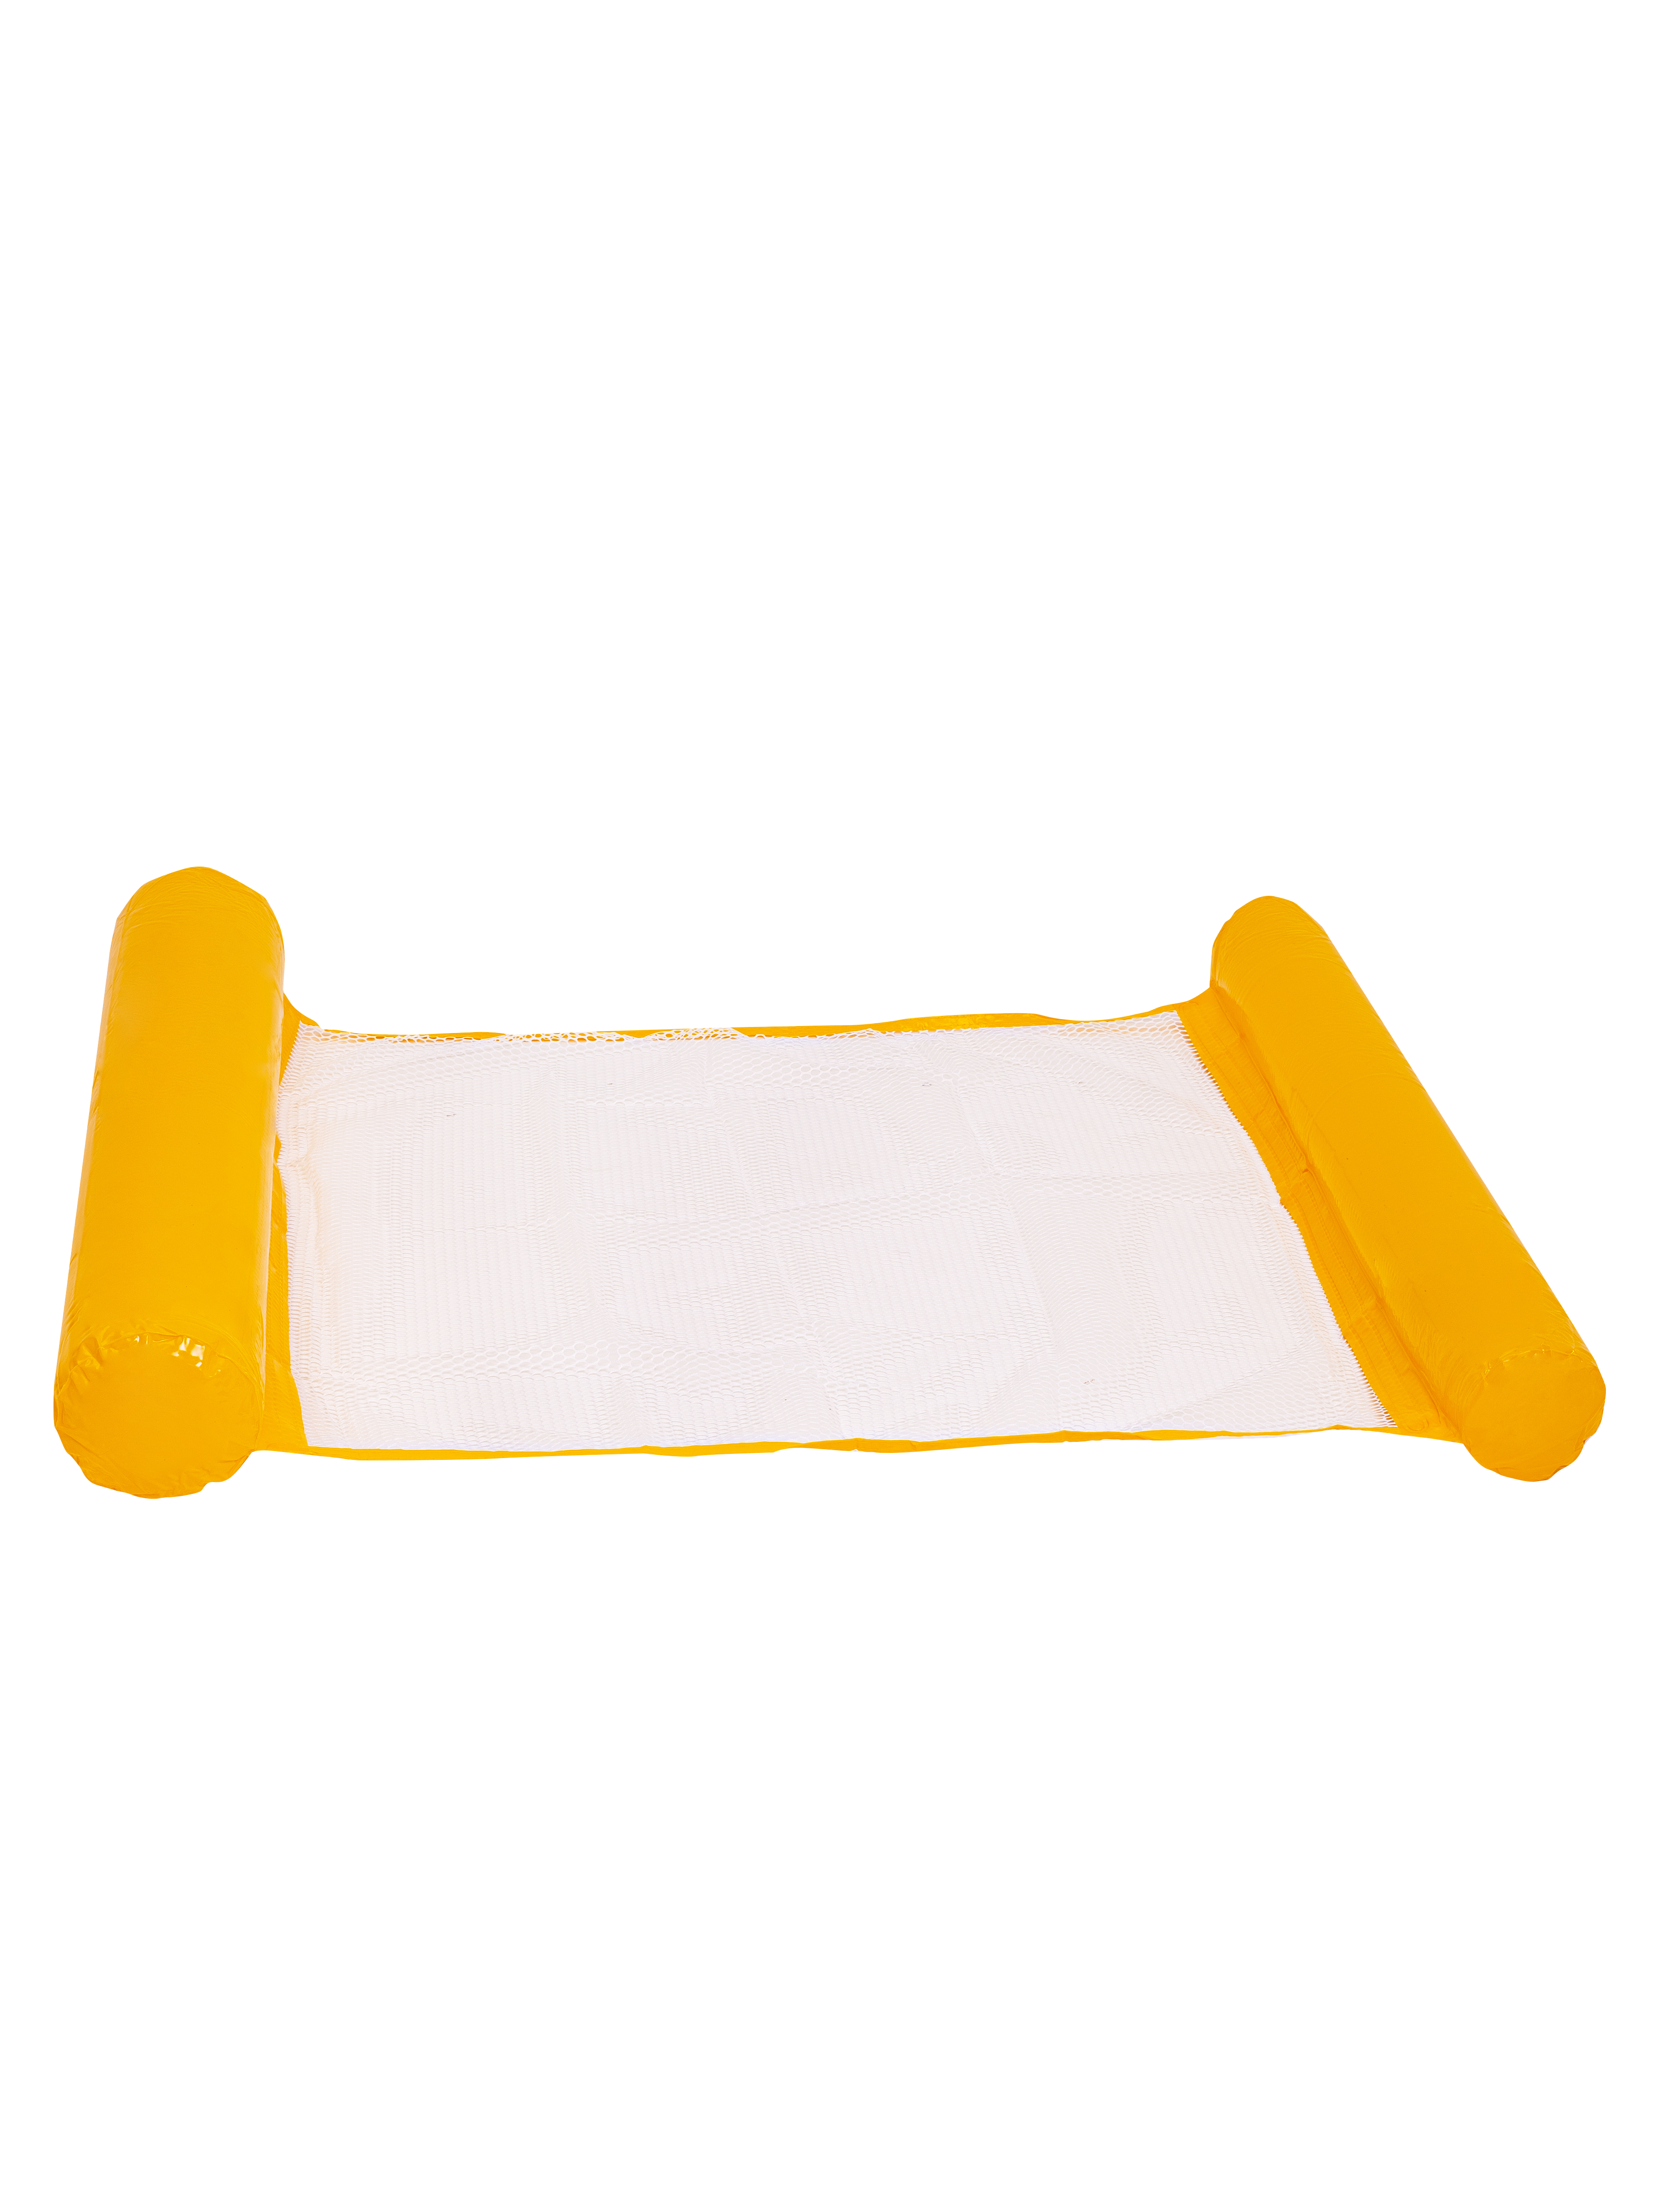 фото Круг для плавания solmax надувной круг-гамак матрас, желтый, 125x70 см sm06997